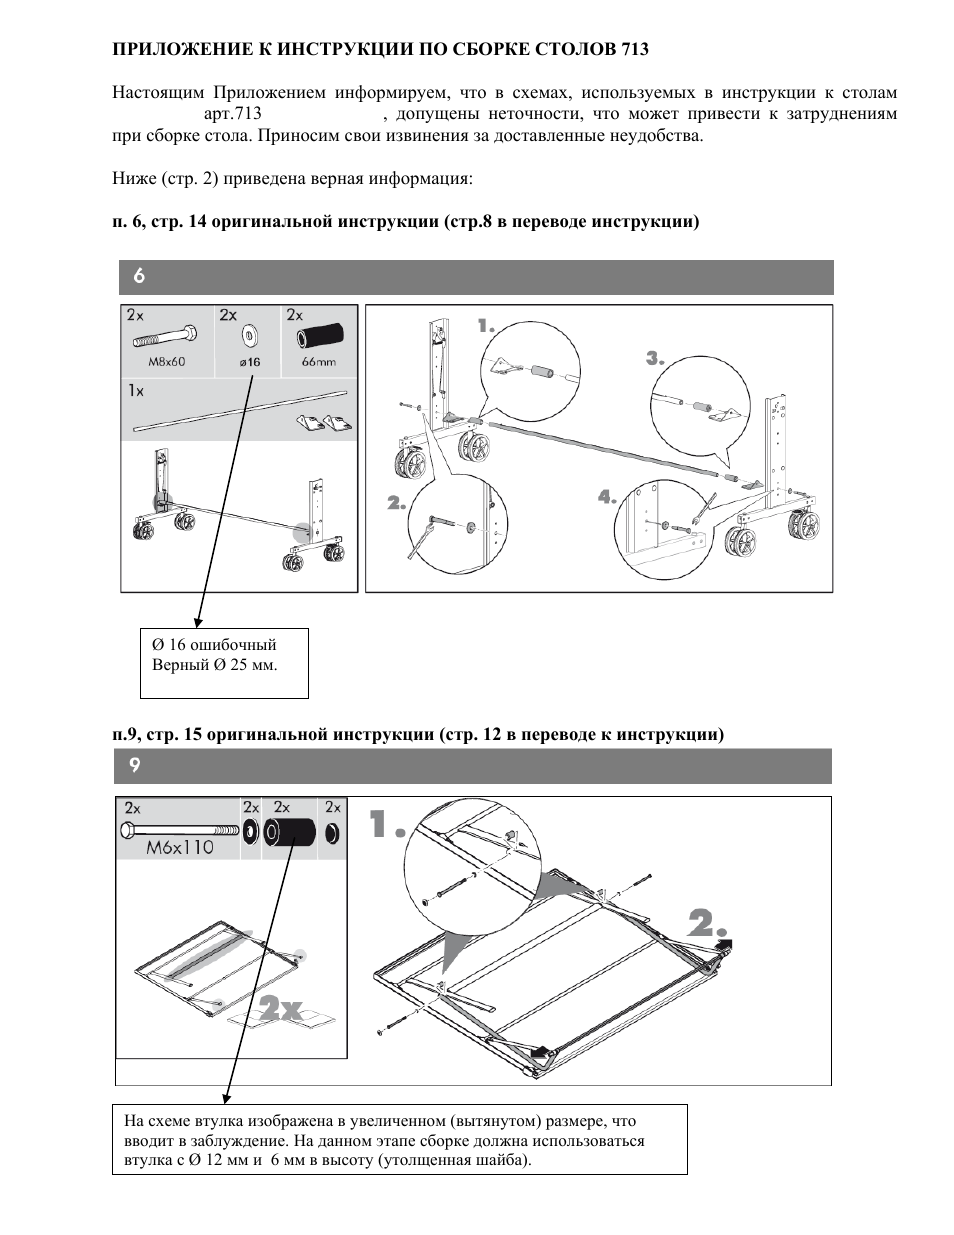 Инструкция по сборке теннисного стола Kettler